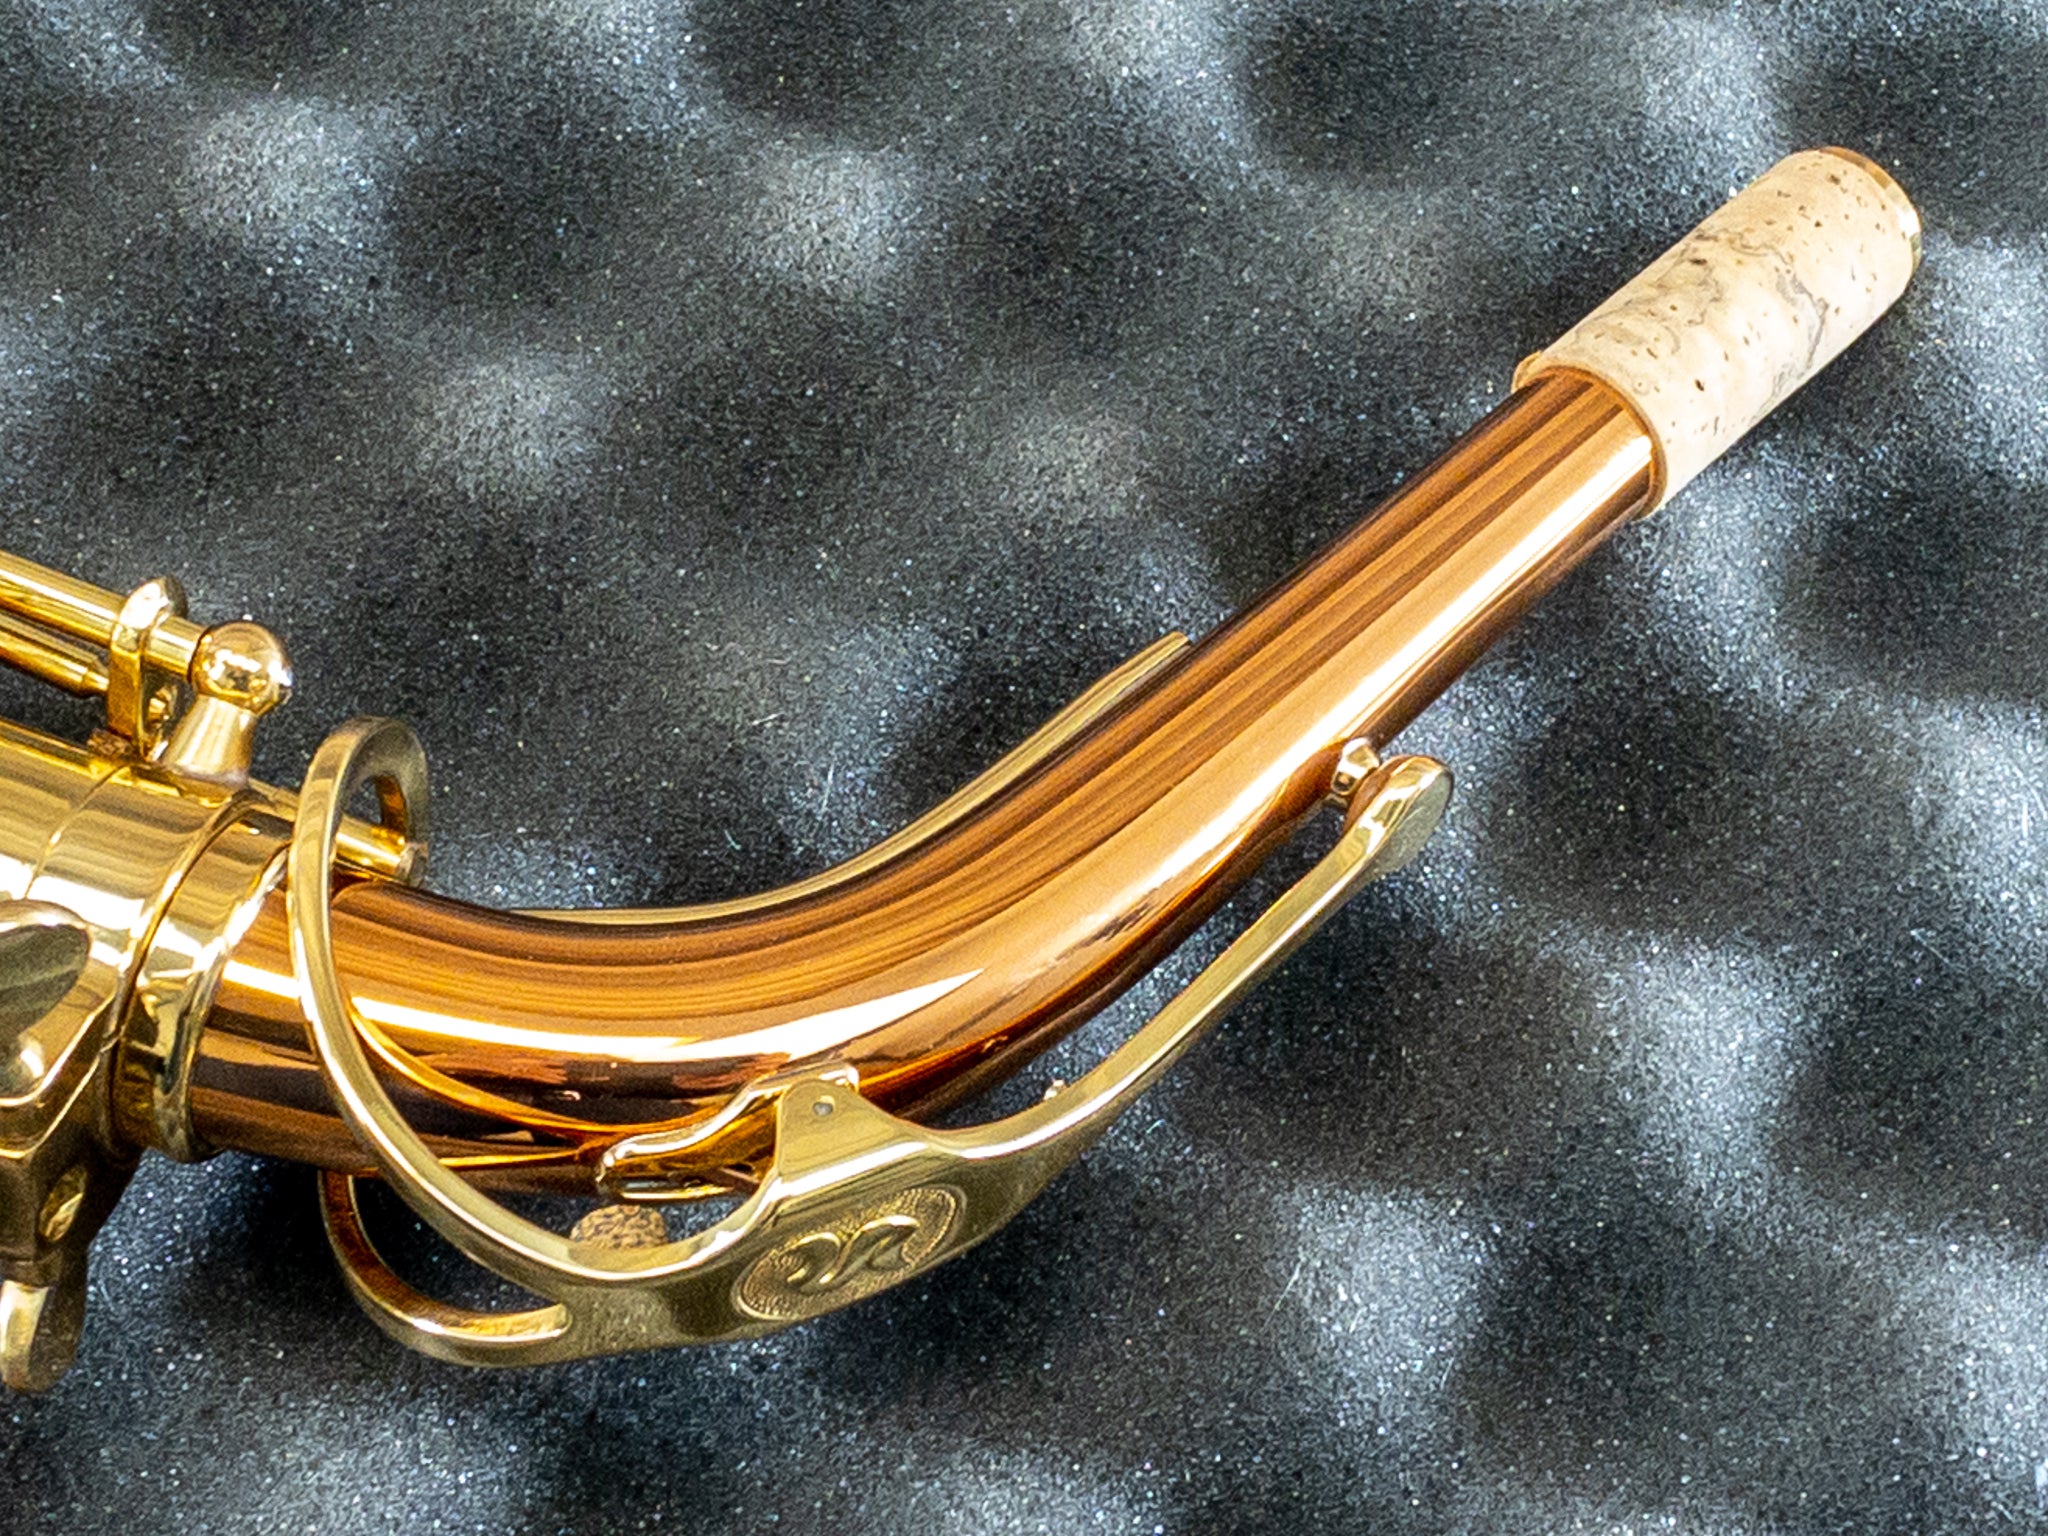 SELMER SAS411C Step Up Intermediate Alto Sax, Copper Brass Body & Keys -  Ray's Midbell Music